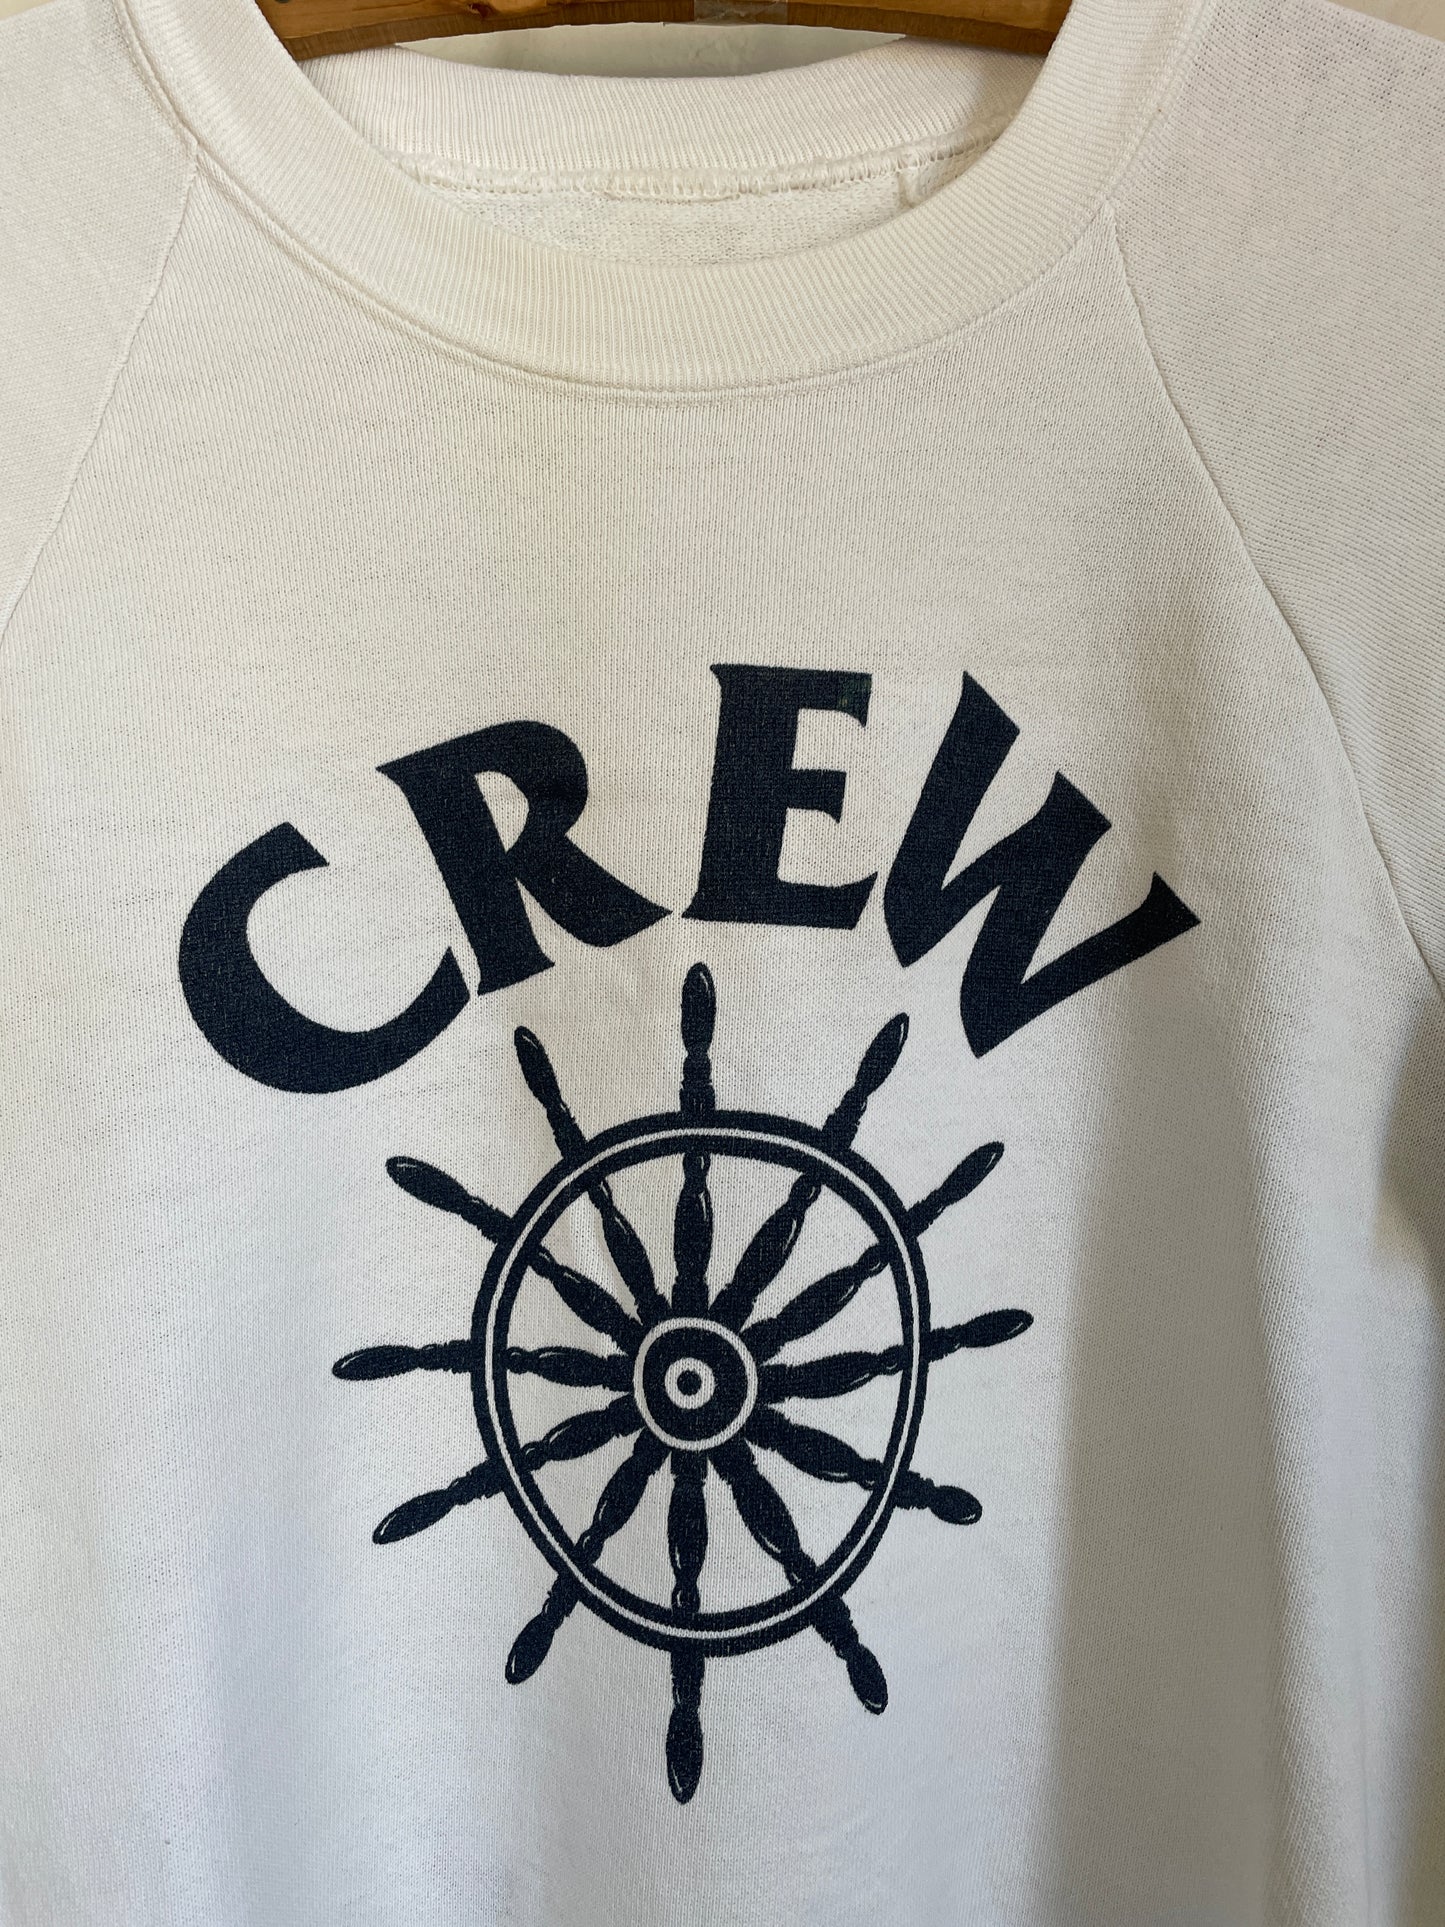 80s Crew Sweatshirt